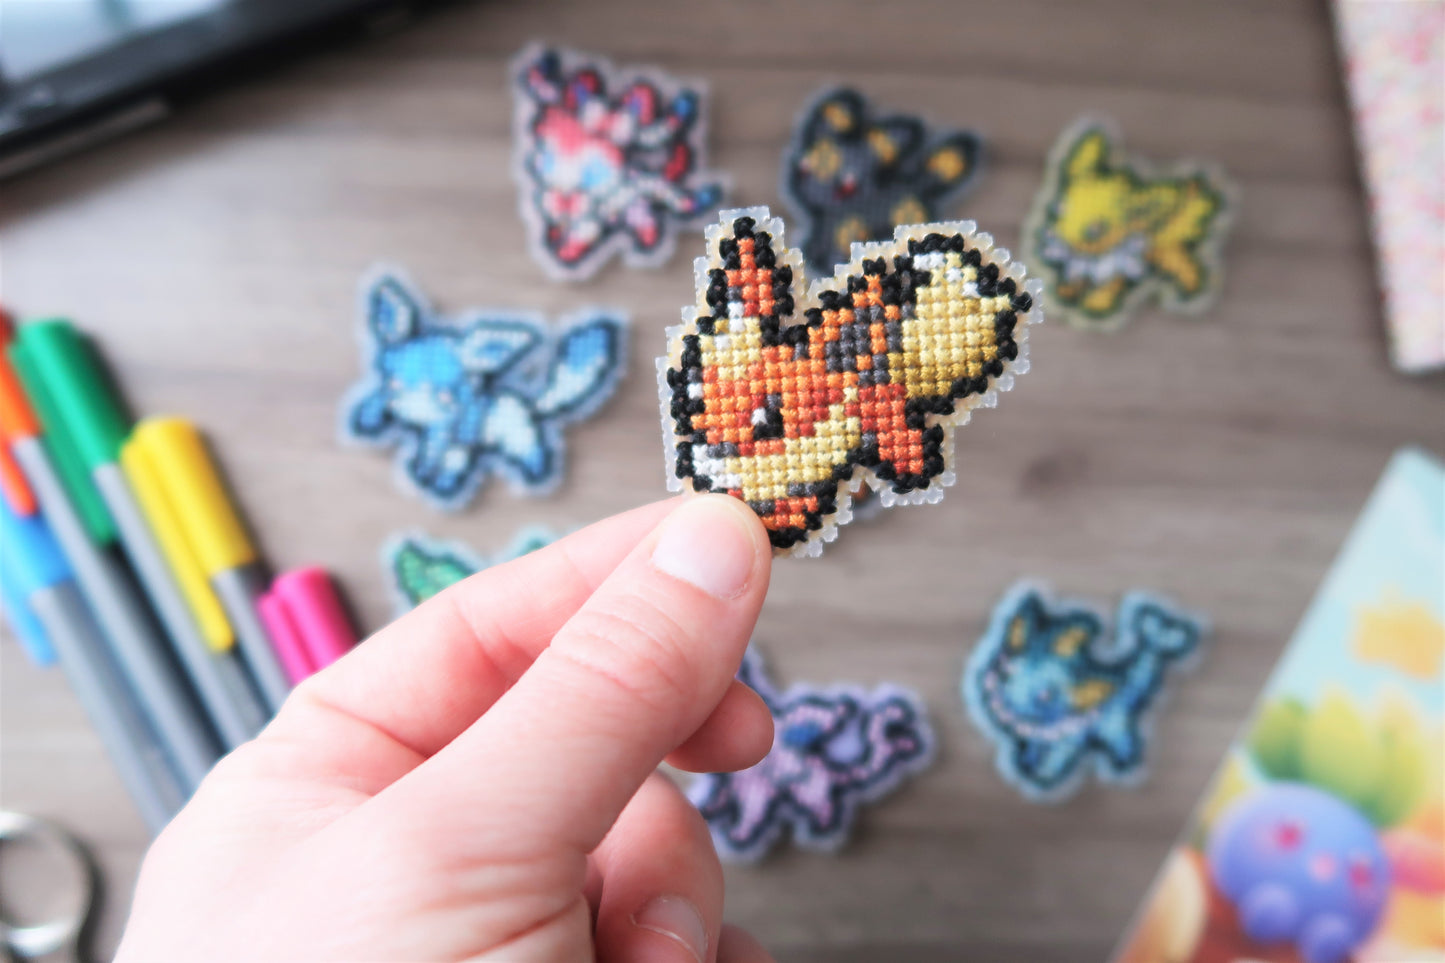 Flareon, Vaporeon and Jolteon from Pokemon - Cross stitch magnet kit